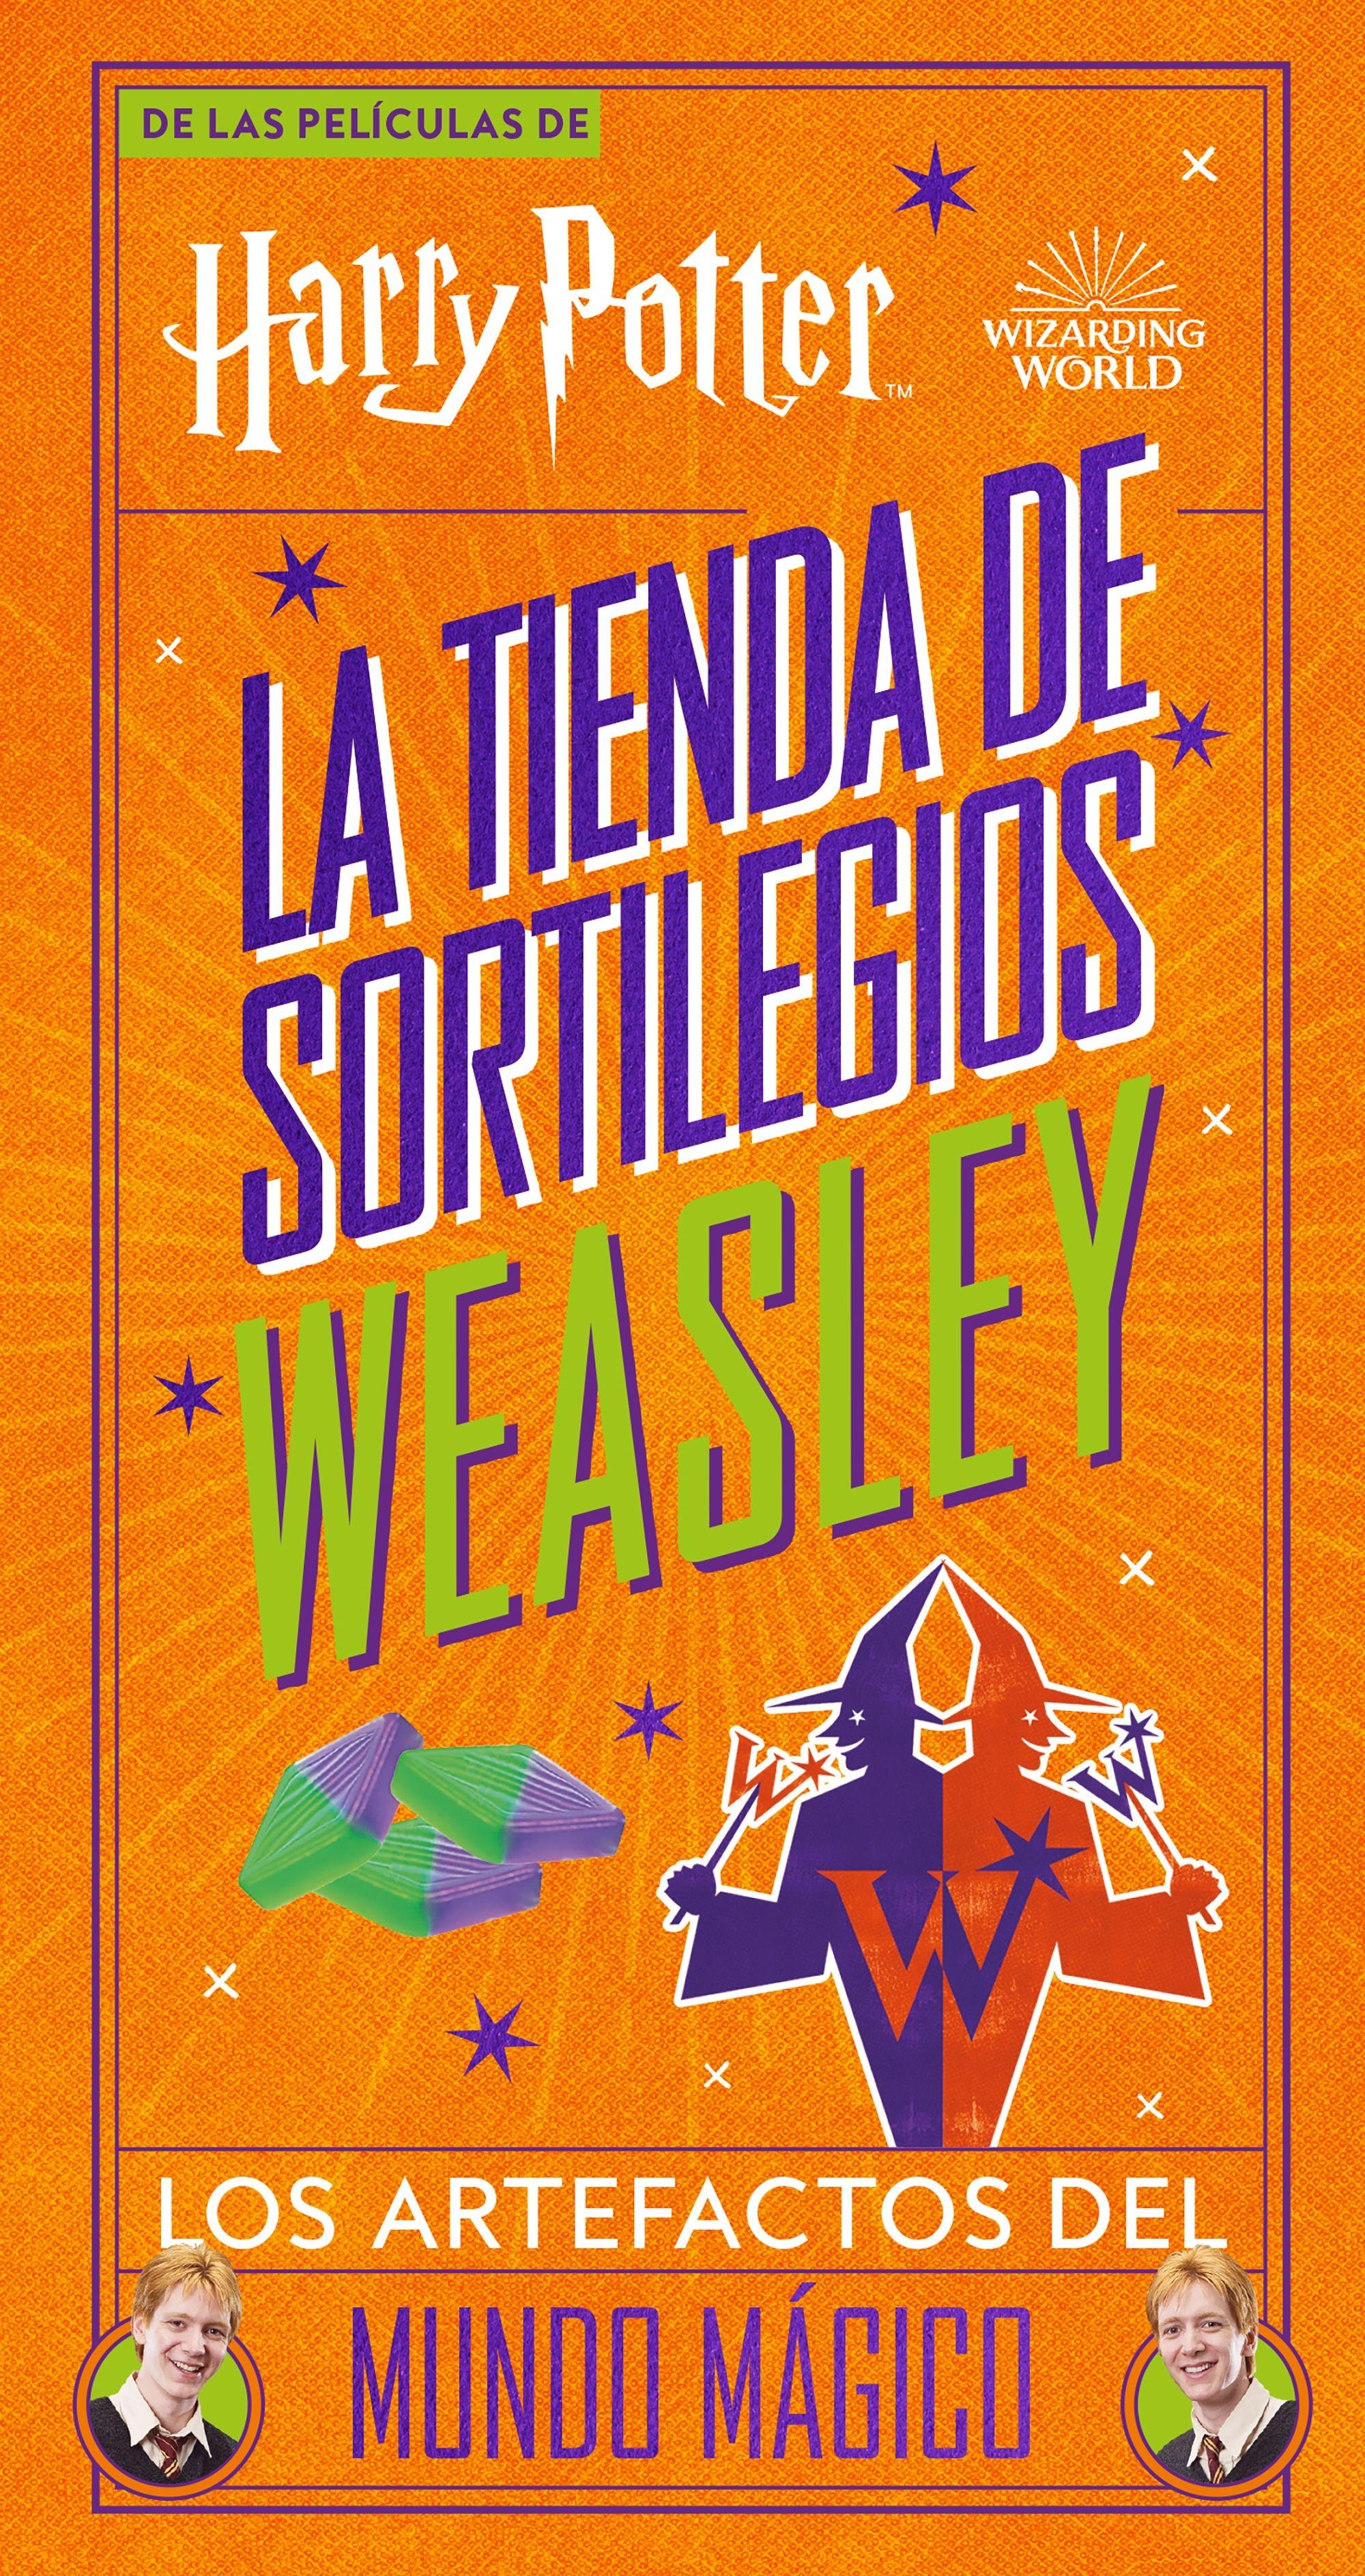 Harry Potter la Tienda de Sortilegos Weasley "Loa Artefactos del Mundo Mágico". 